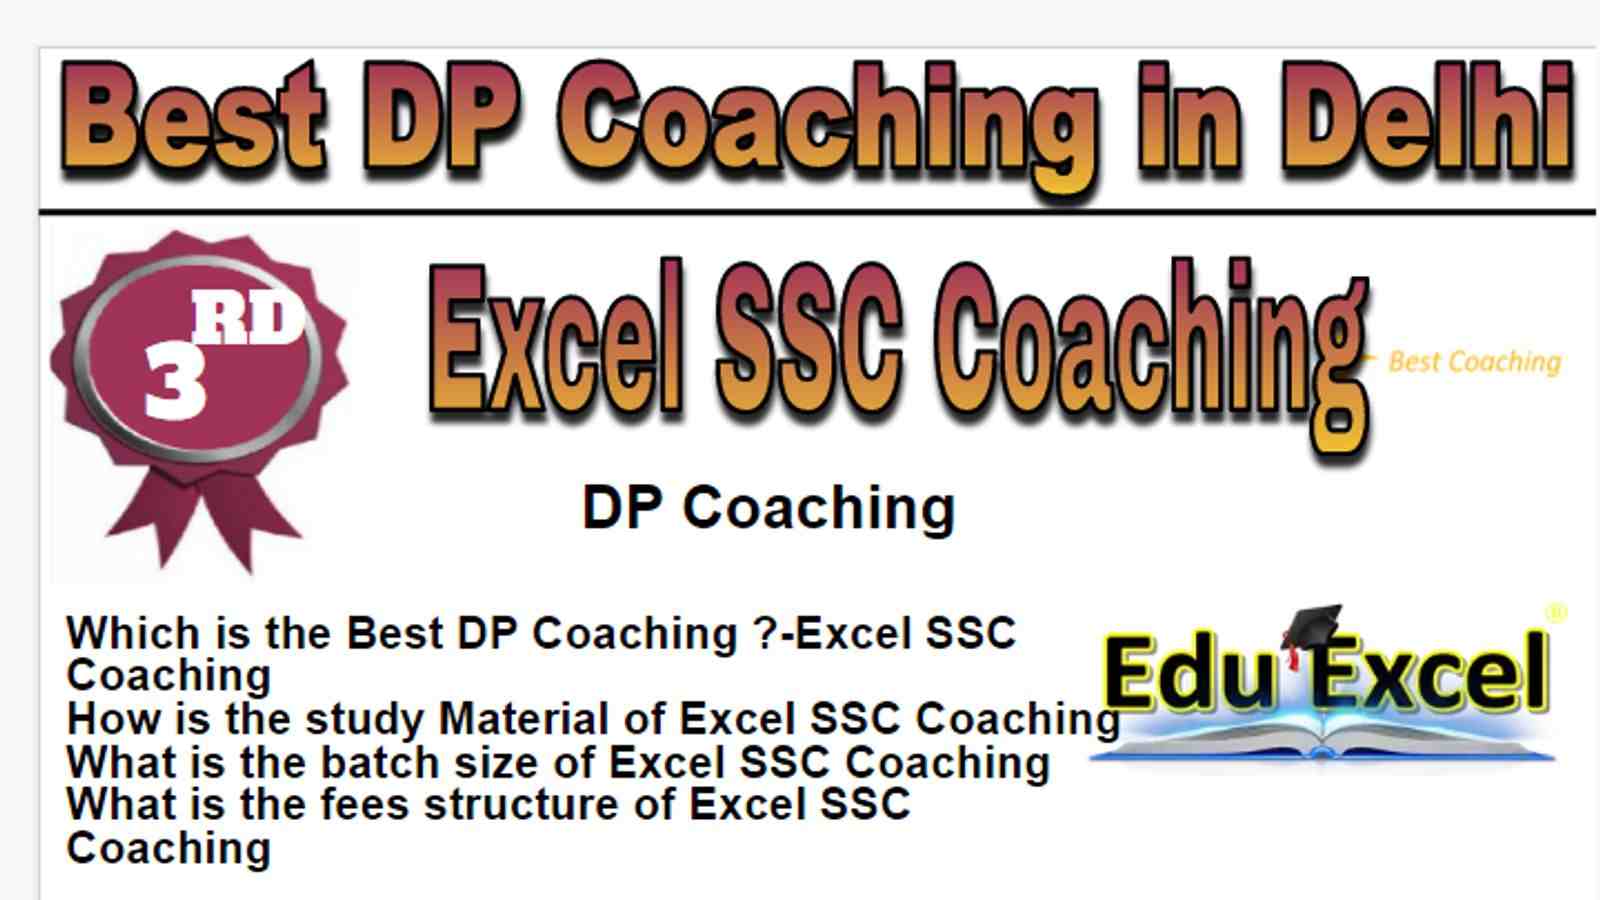 Rank 3 Best DP Coaching in Delhi